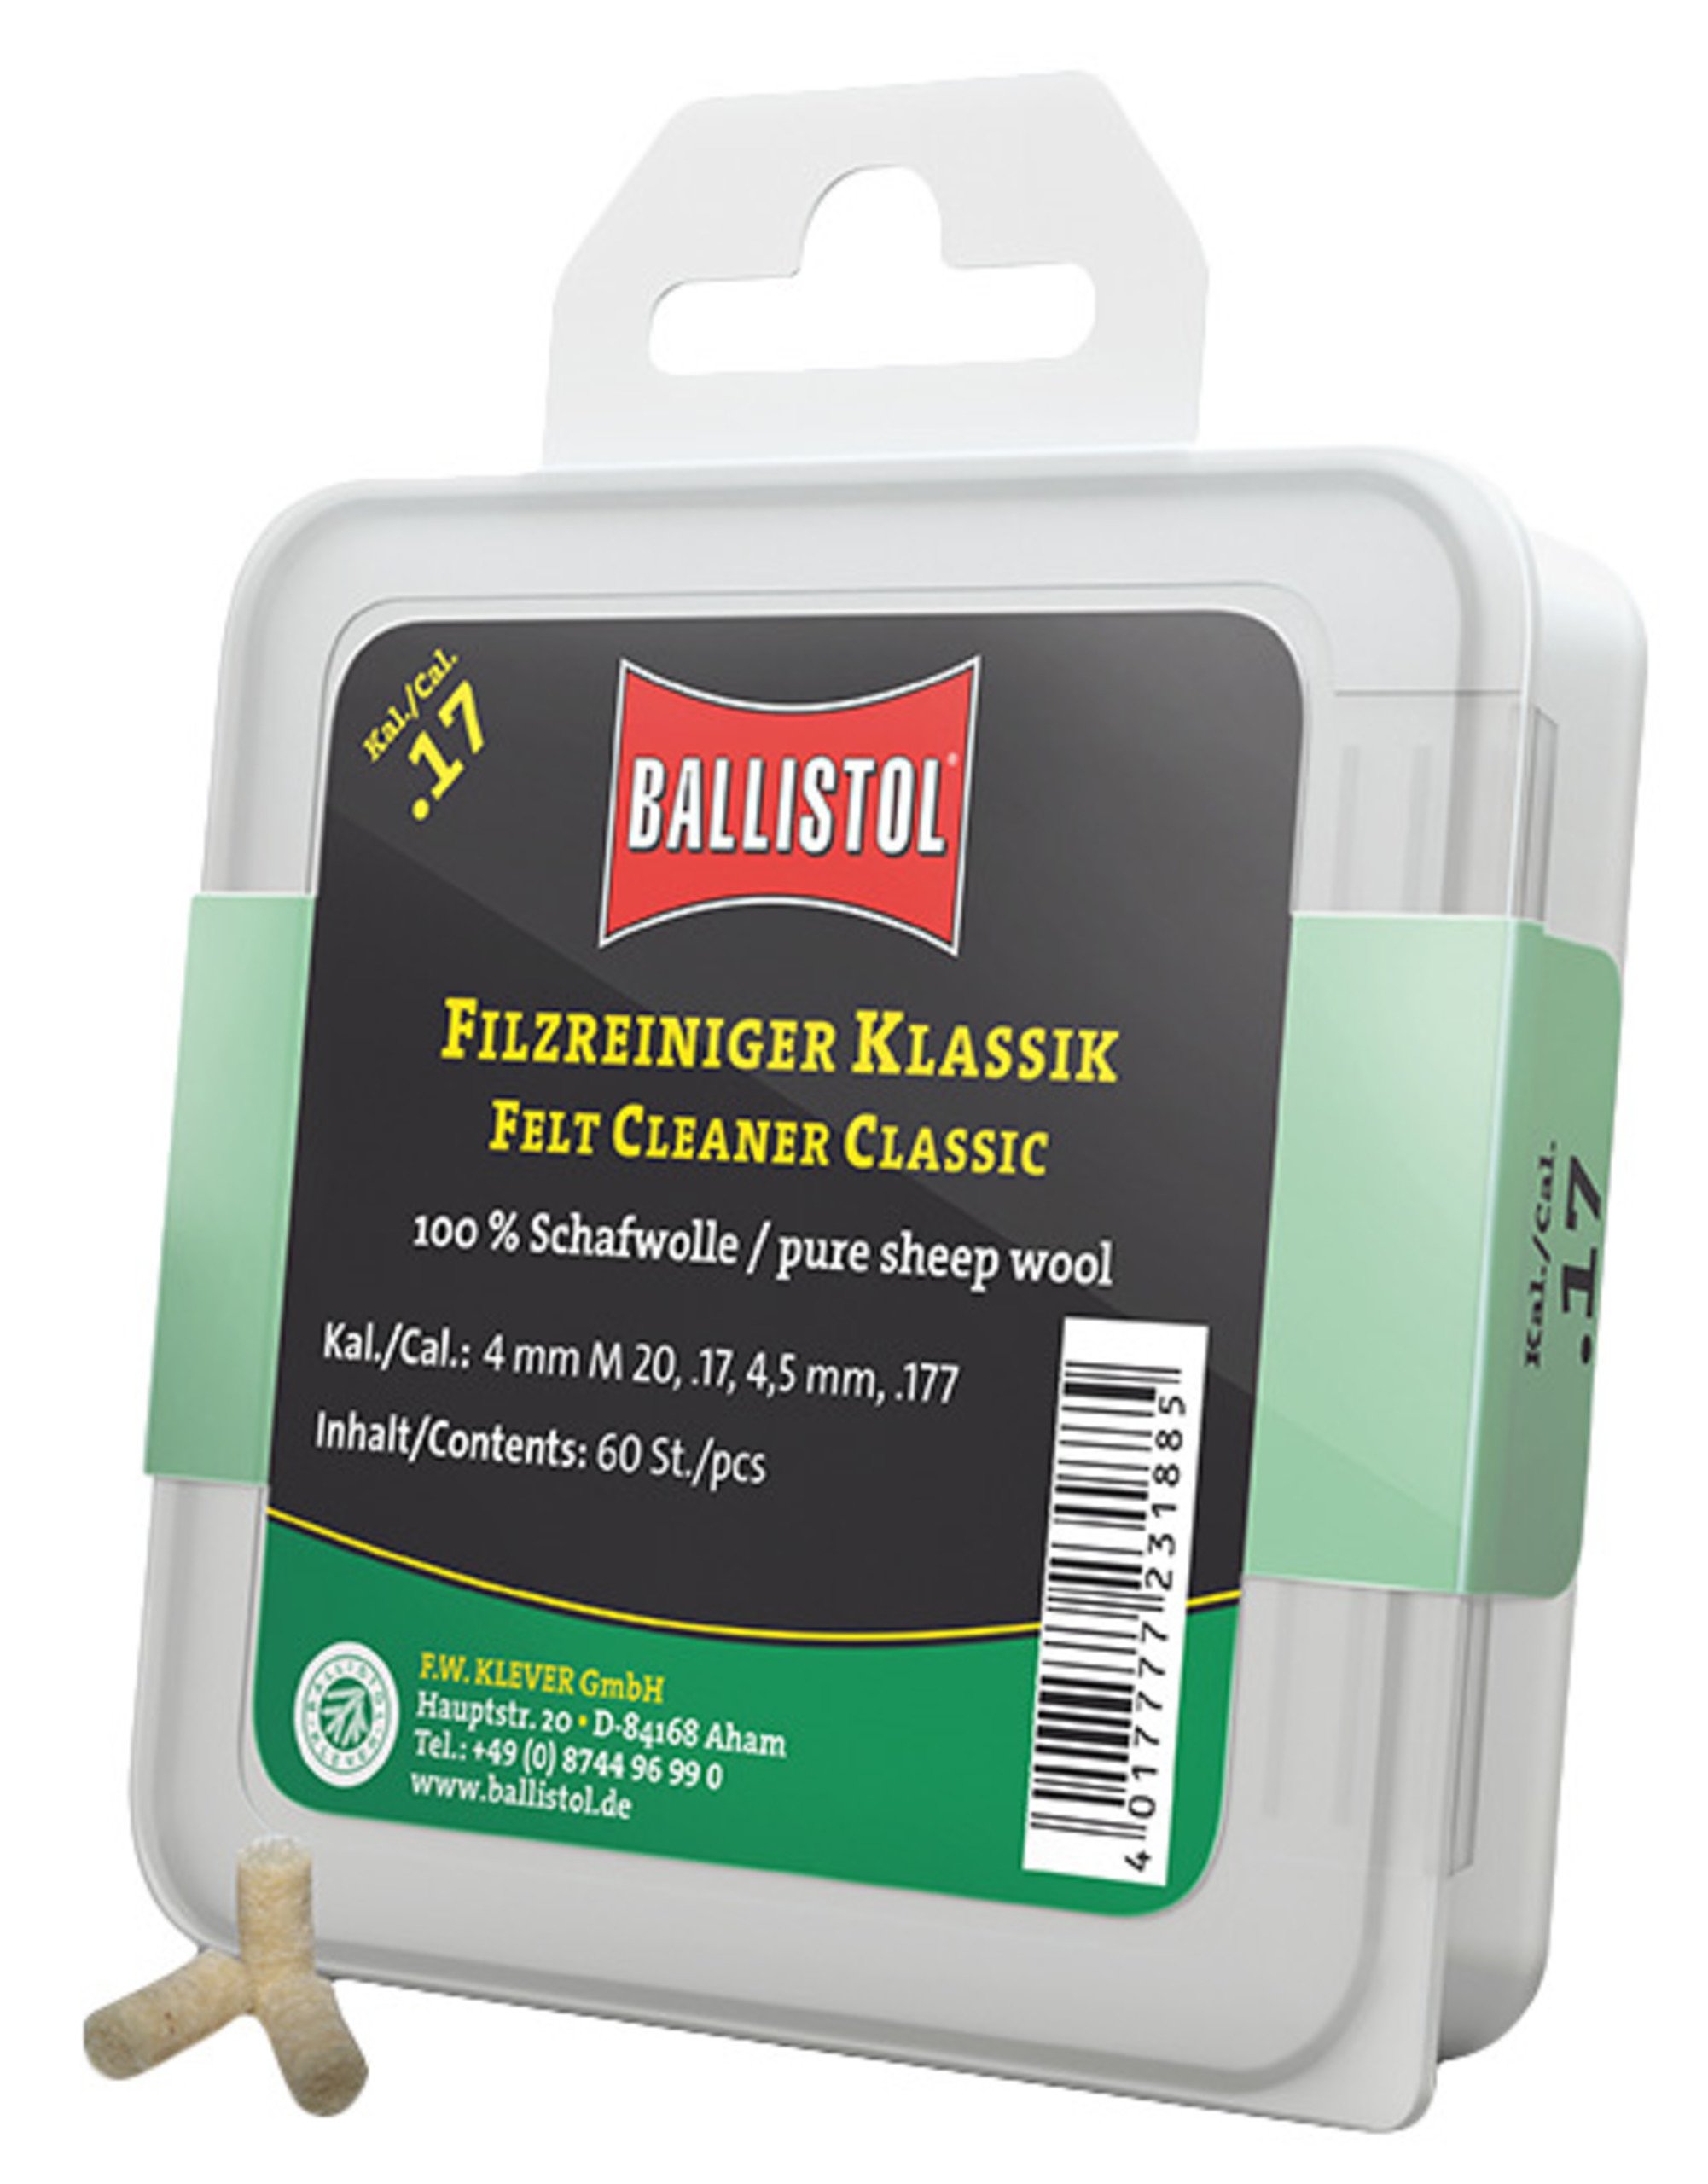 Ballistol Filzreiniger Klassik